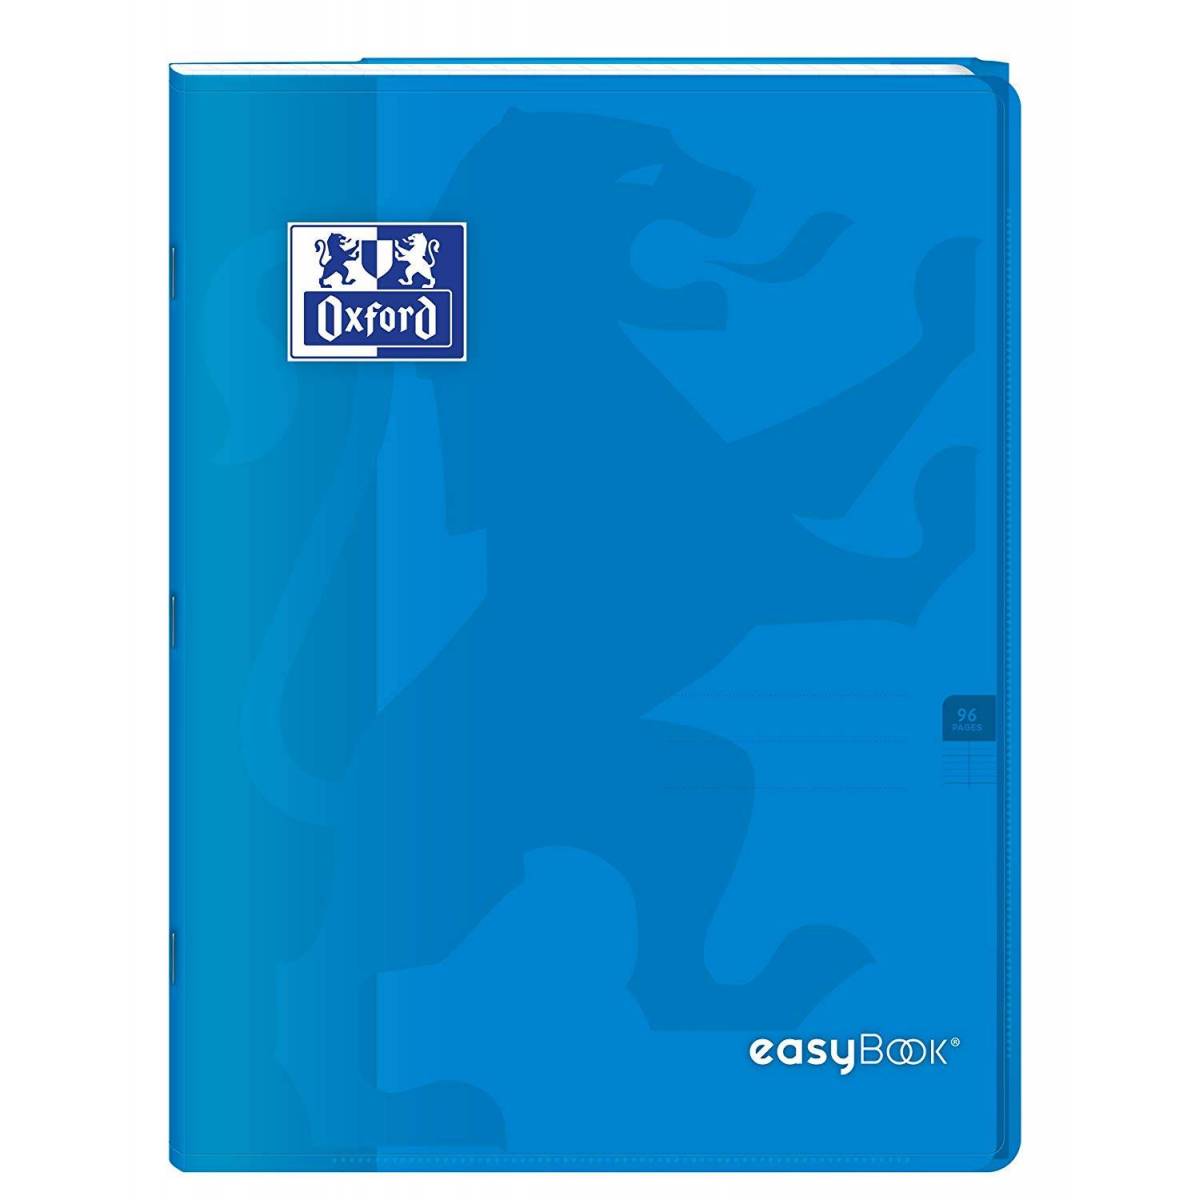 Cahier Oxford Easybook 3 en 1 - 24 x 32 cm 96p Petits Carreaux